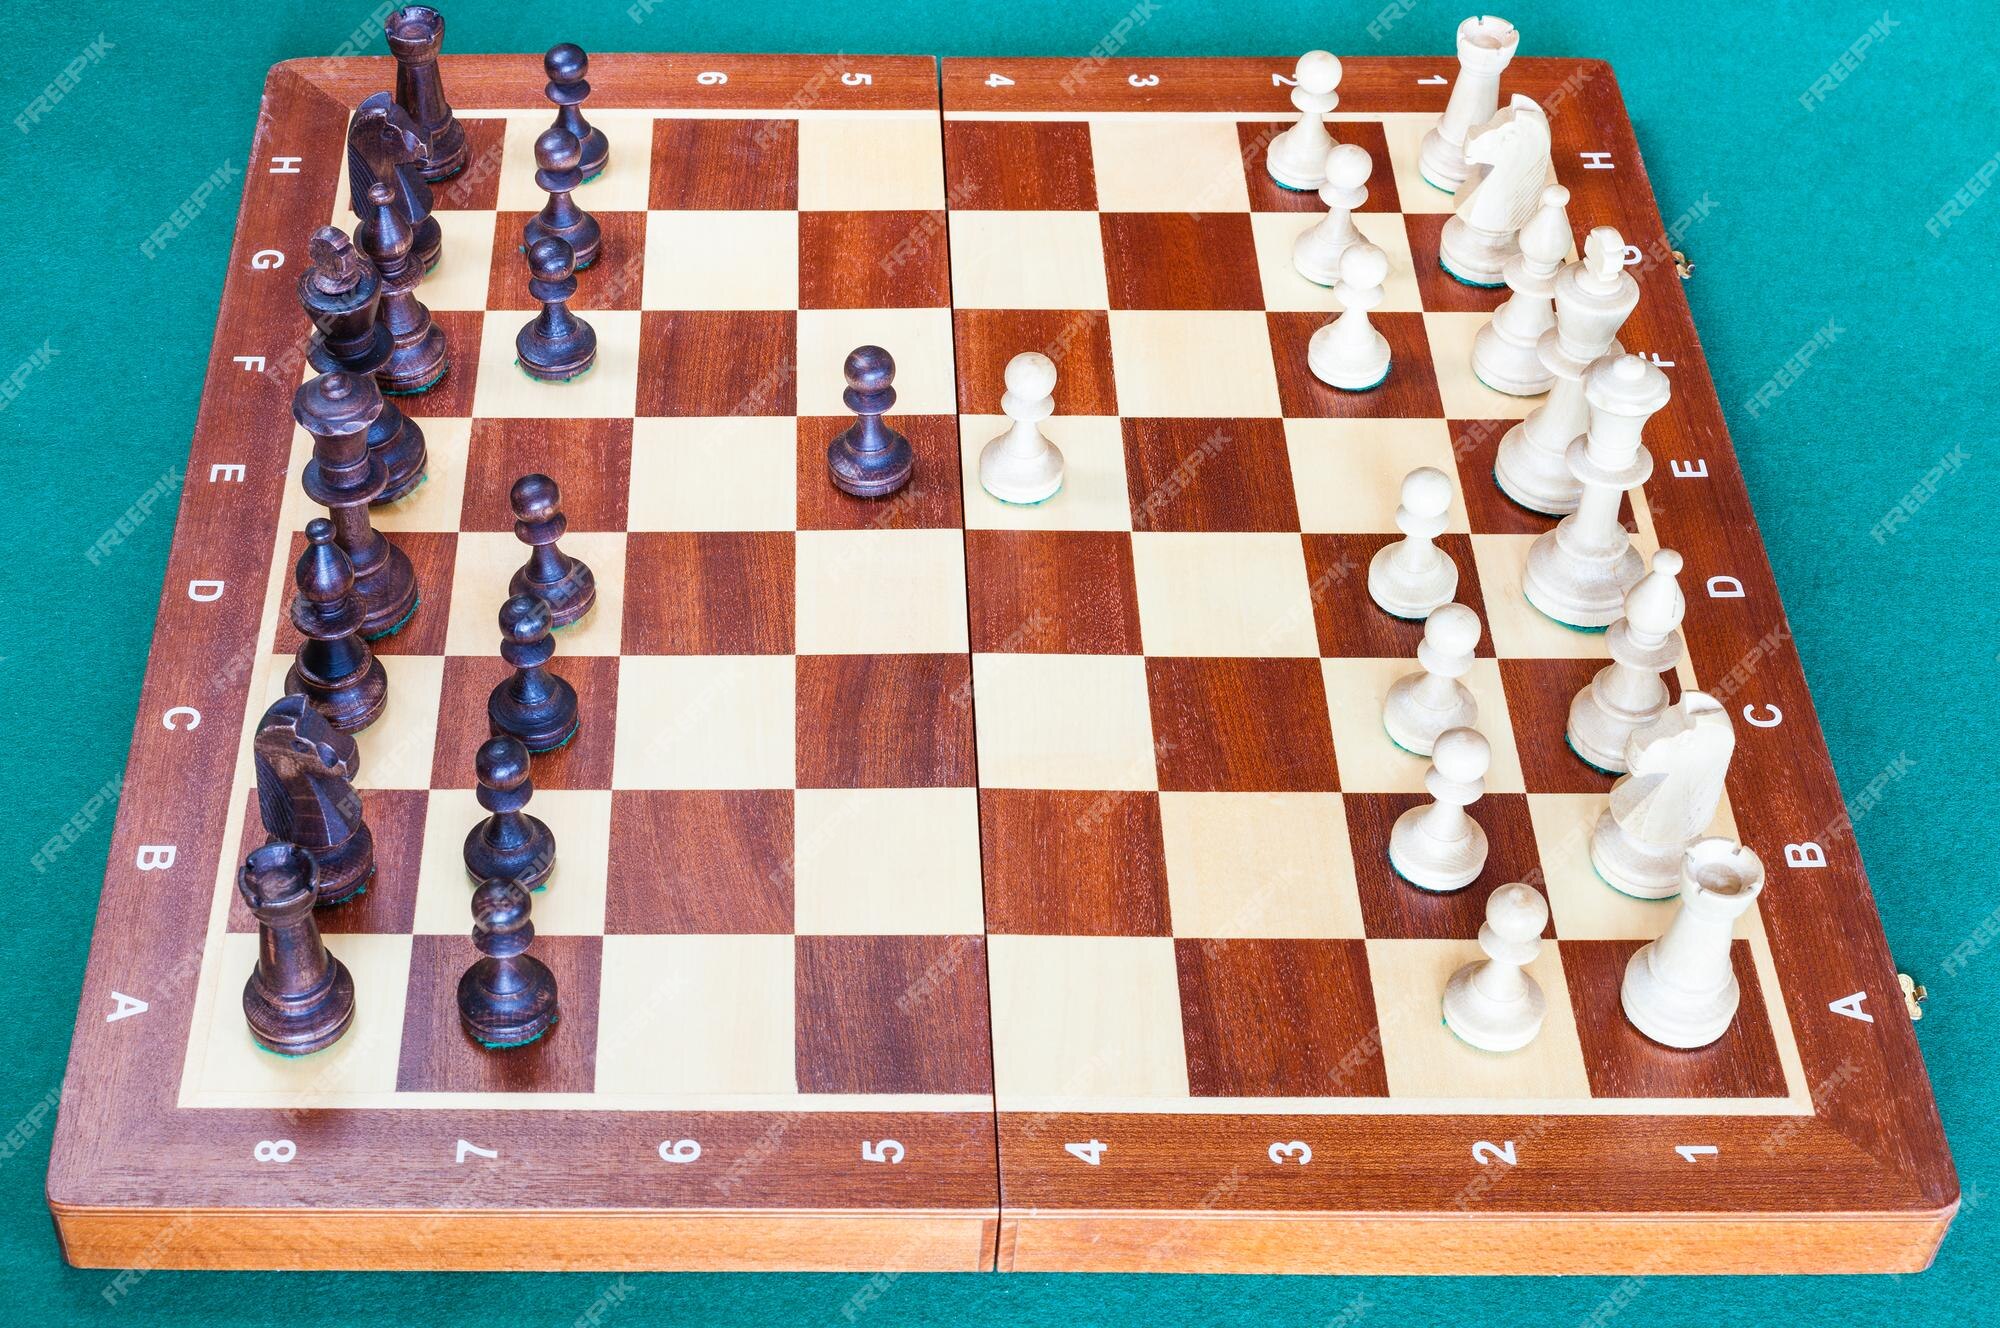 tabuleiro de xadrez de madeira com os primeiros movimentos do peão